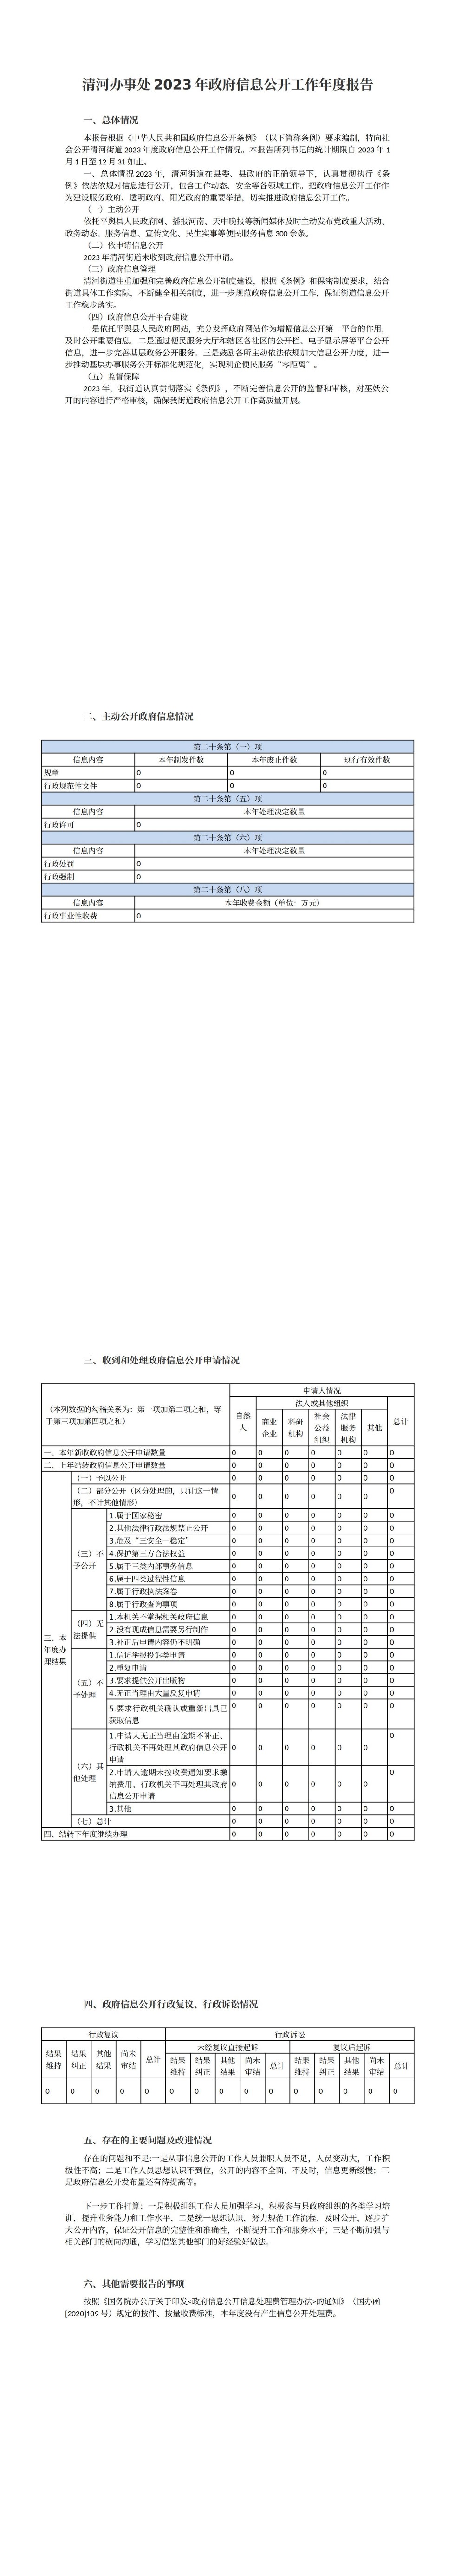 清河办事处2023年政府信息公开工作年度报告_00.jpg